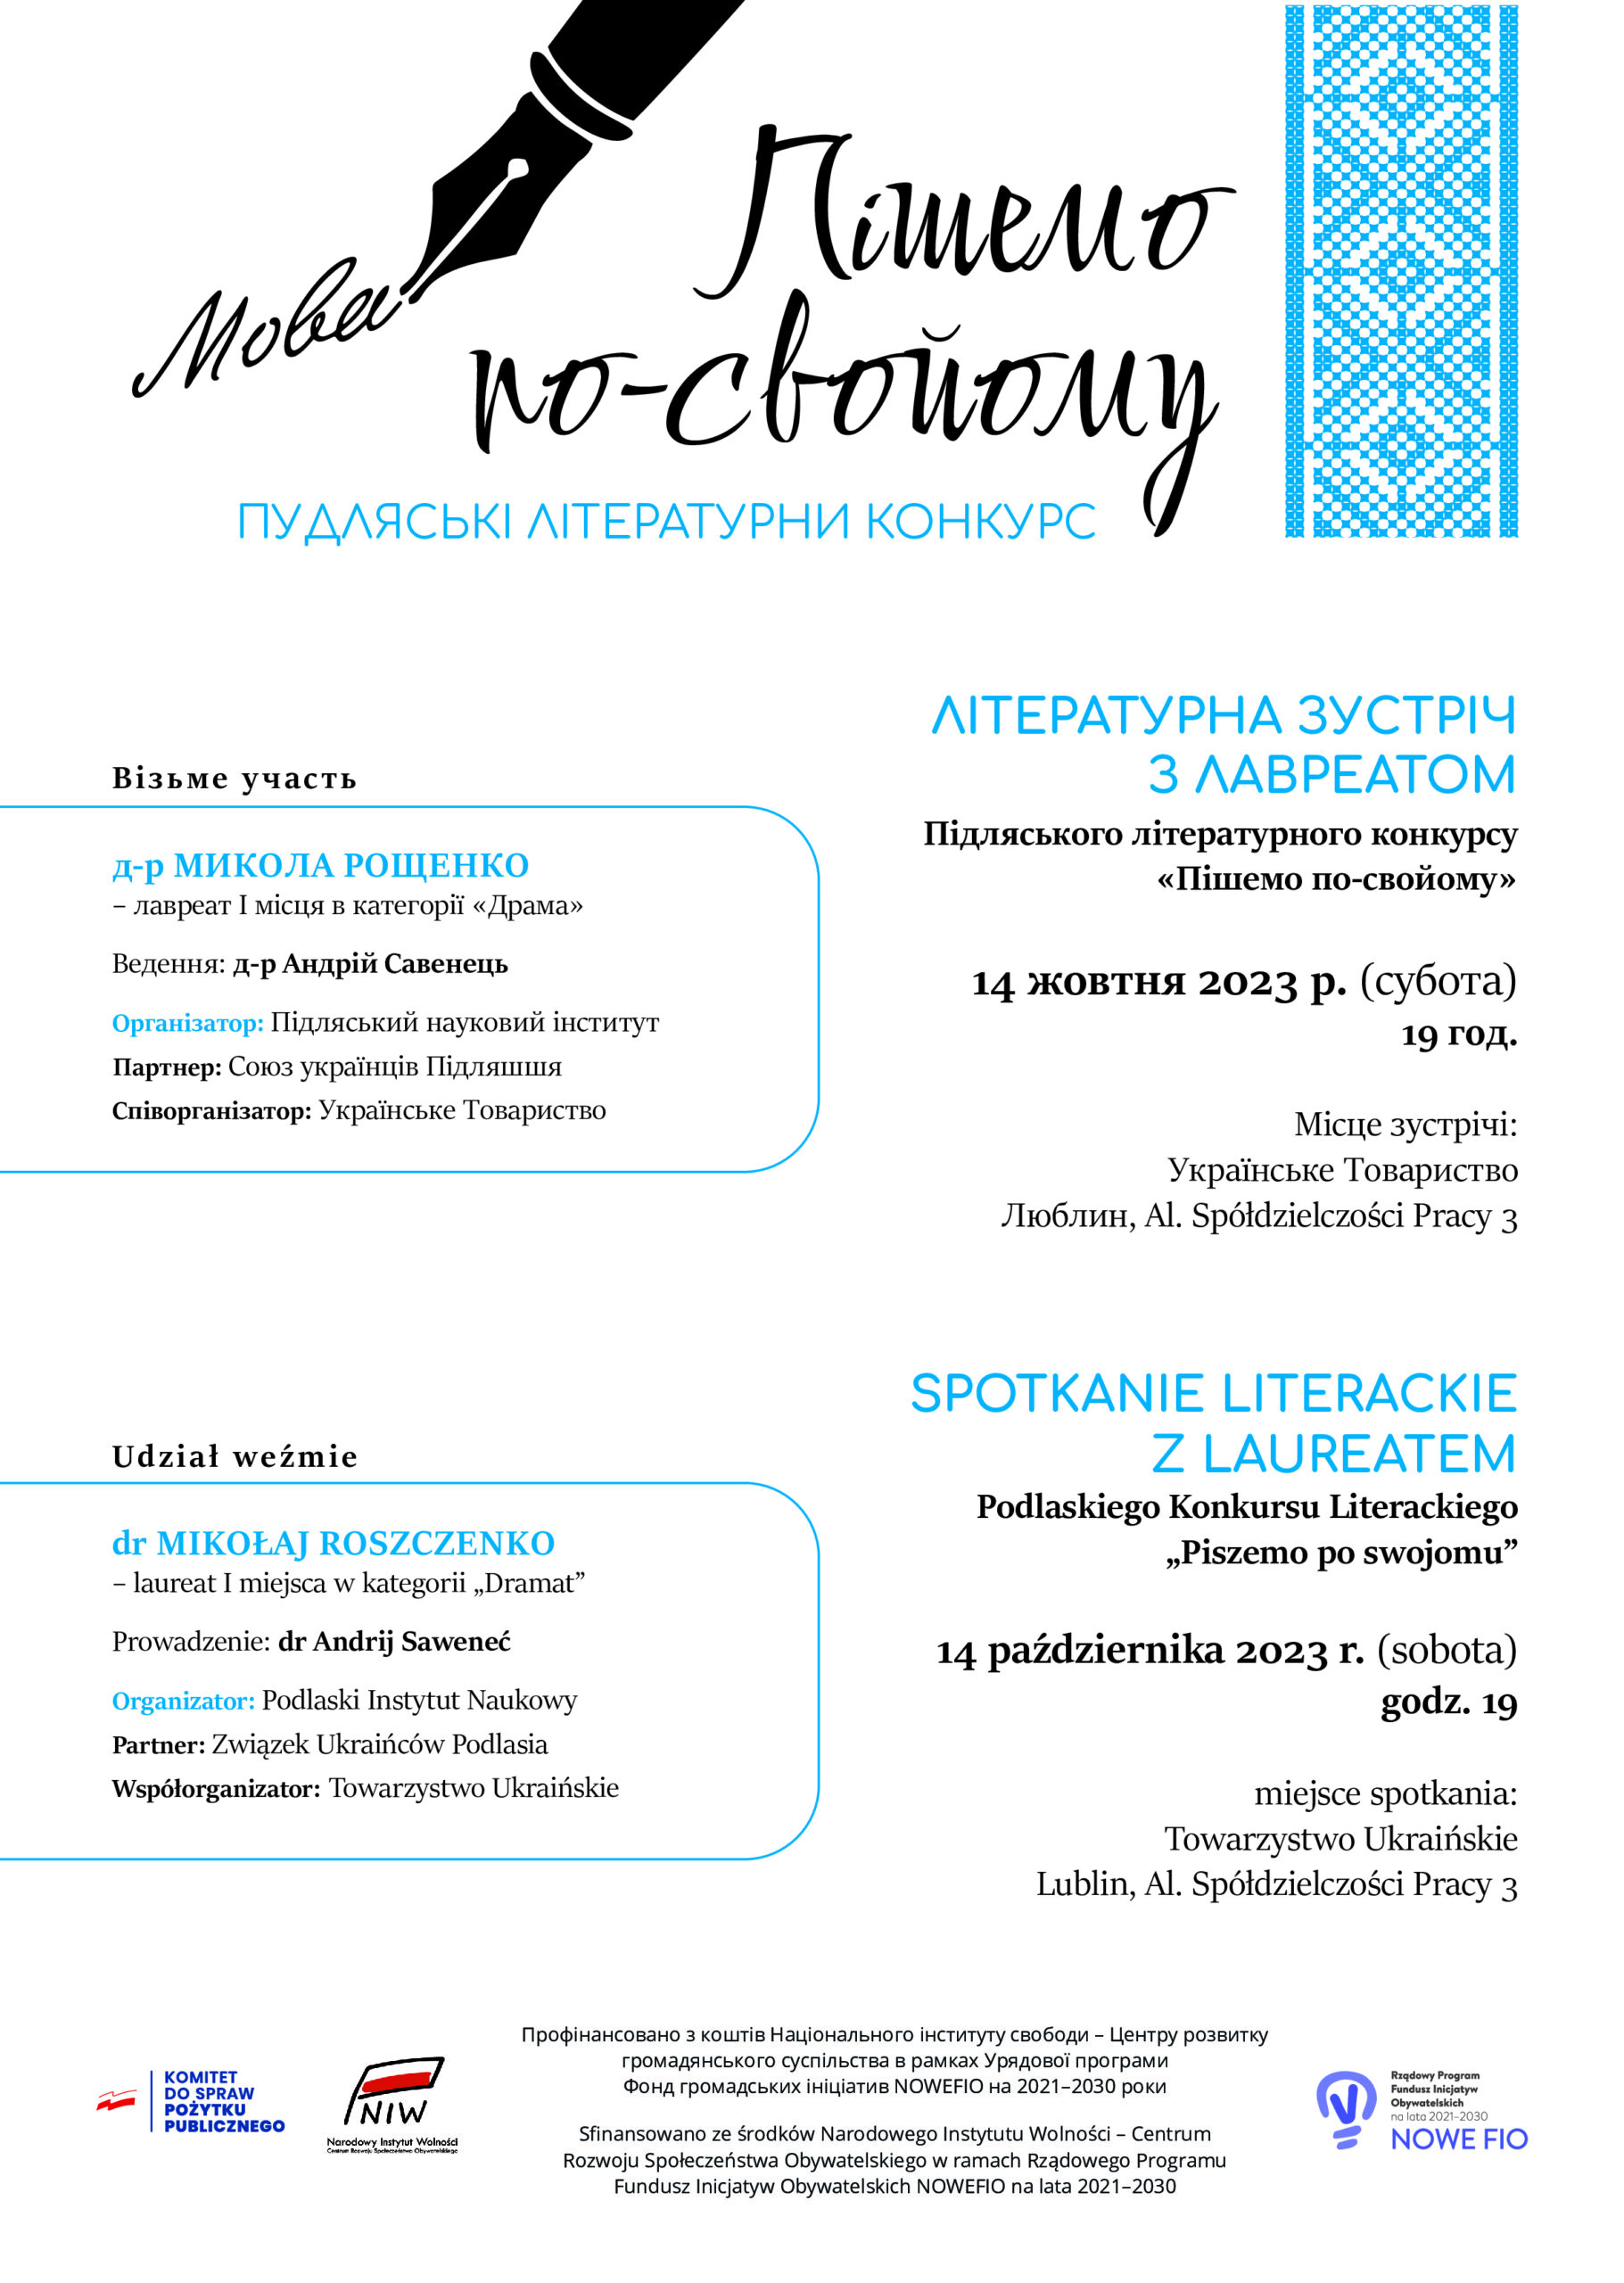 Spotkanie literackie z laureatem Podlaskiego Konkursu Literackiego „Piszemo po swojomu”